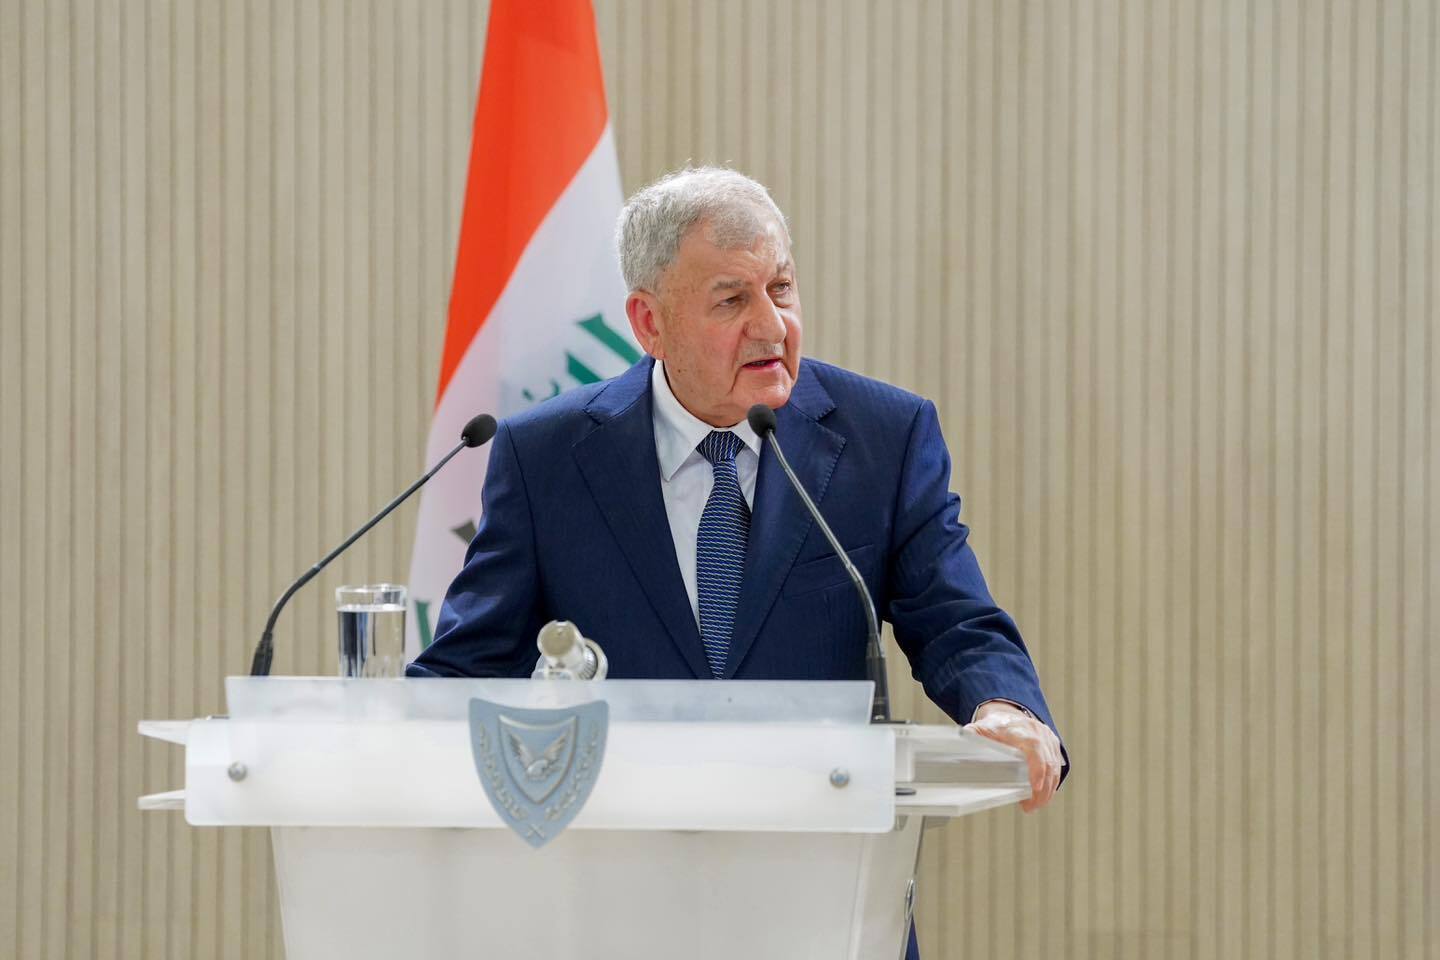 الرئيس العراقي يؤكد الحاجة للاتفاق مع تركيا على حل مشكلة المياه